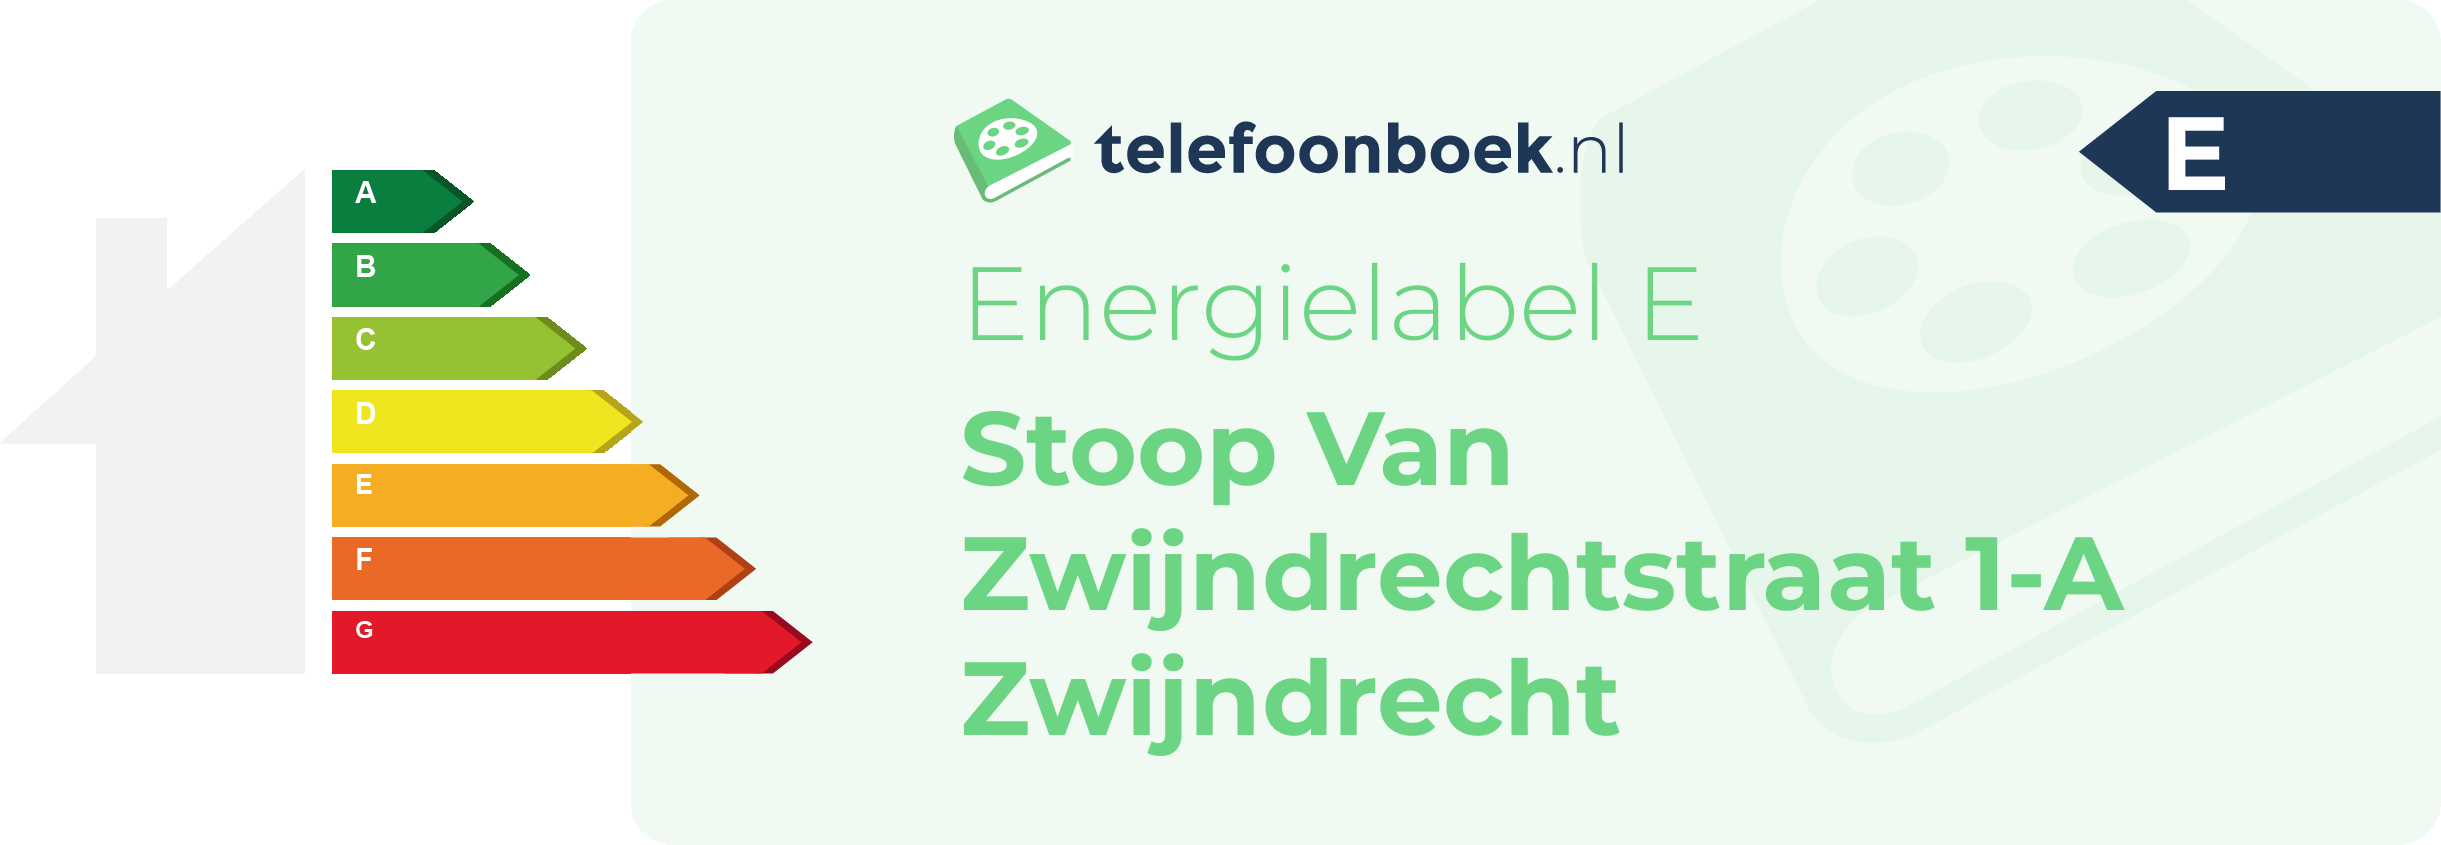 Energielabel Stoop Van Zwijndrechtstraat 1-A Zwijndrecht